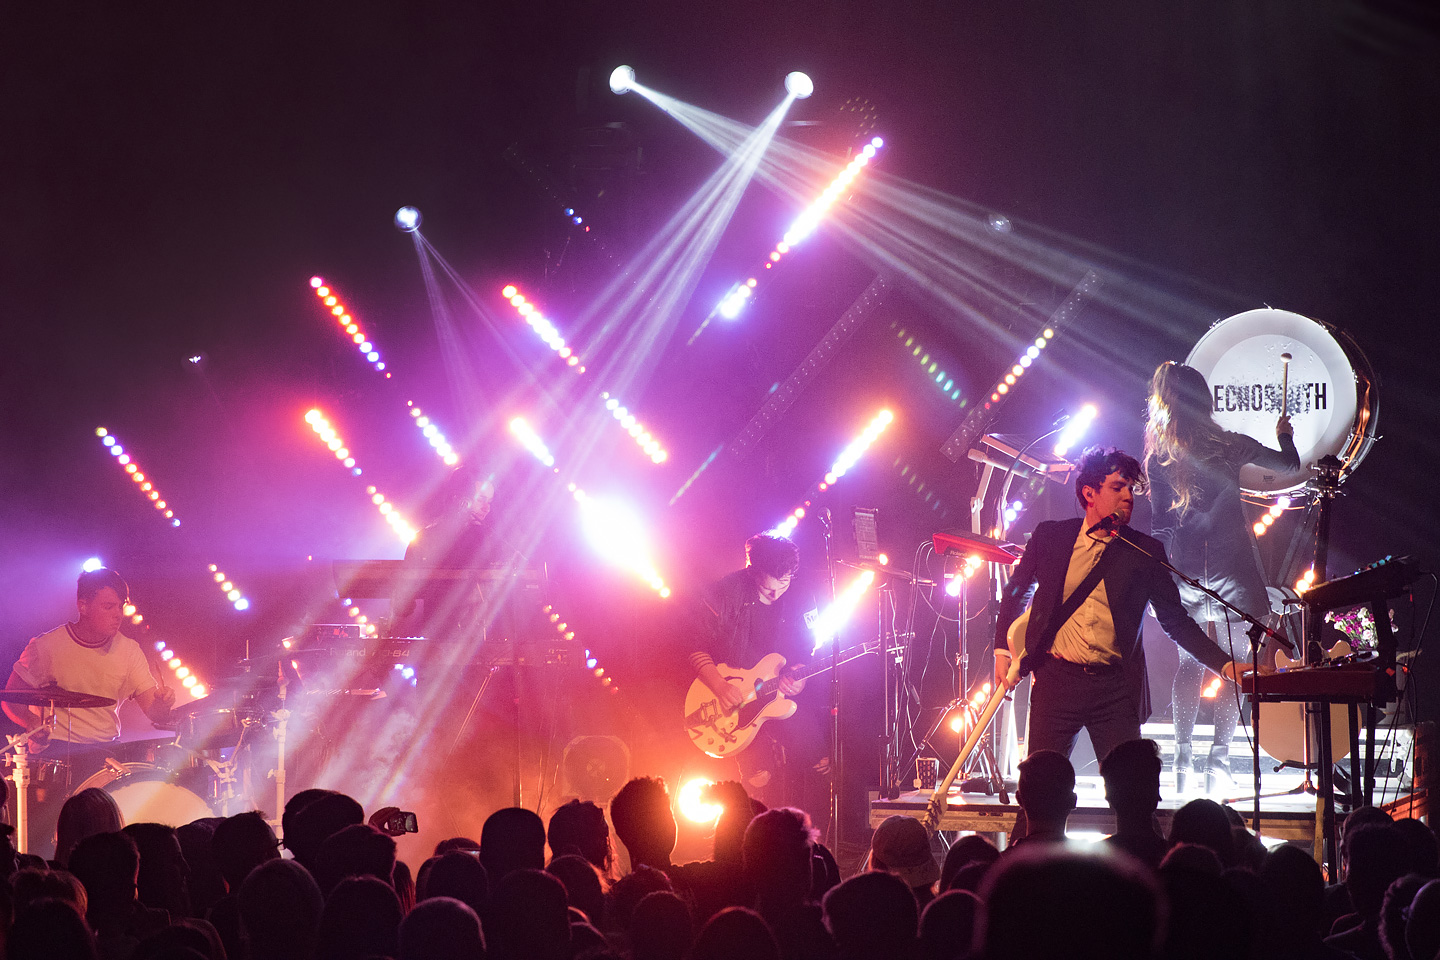 Echosmith - Concert Photos - Denver, Colorado 2018